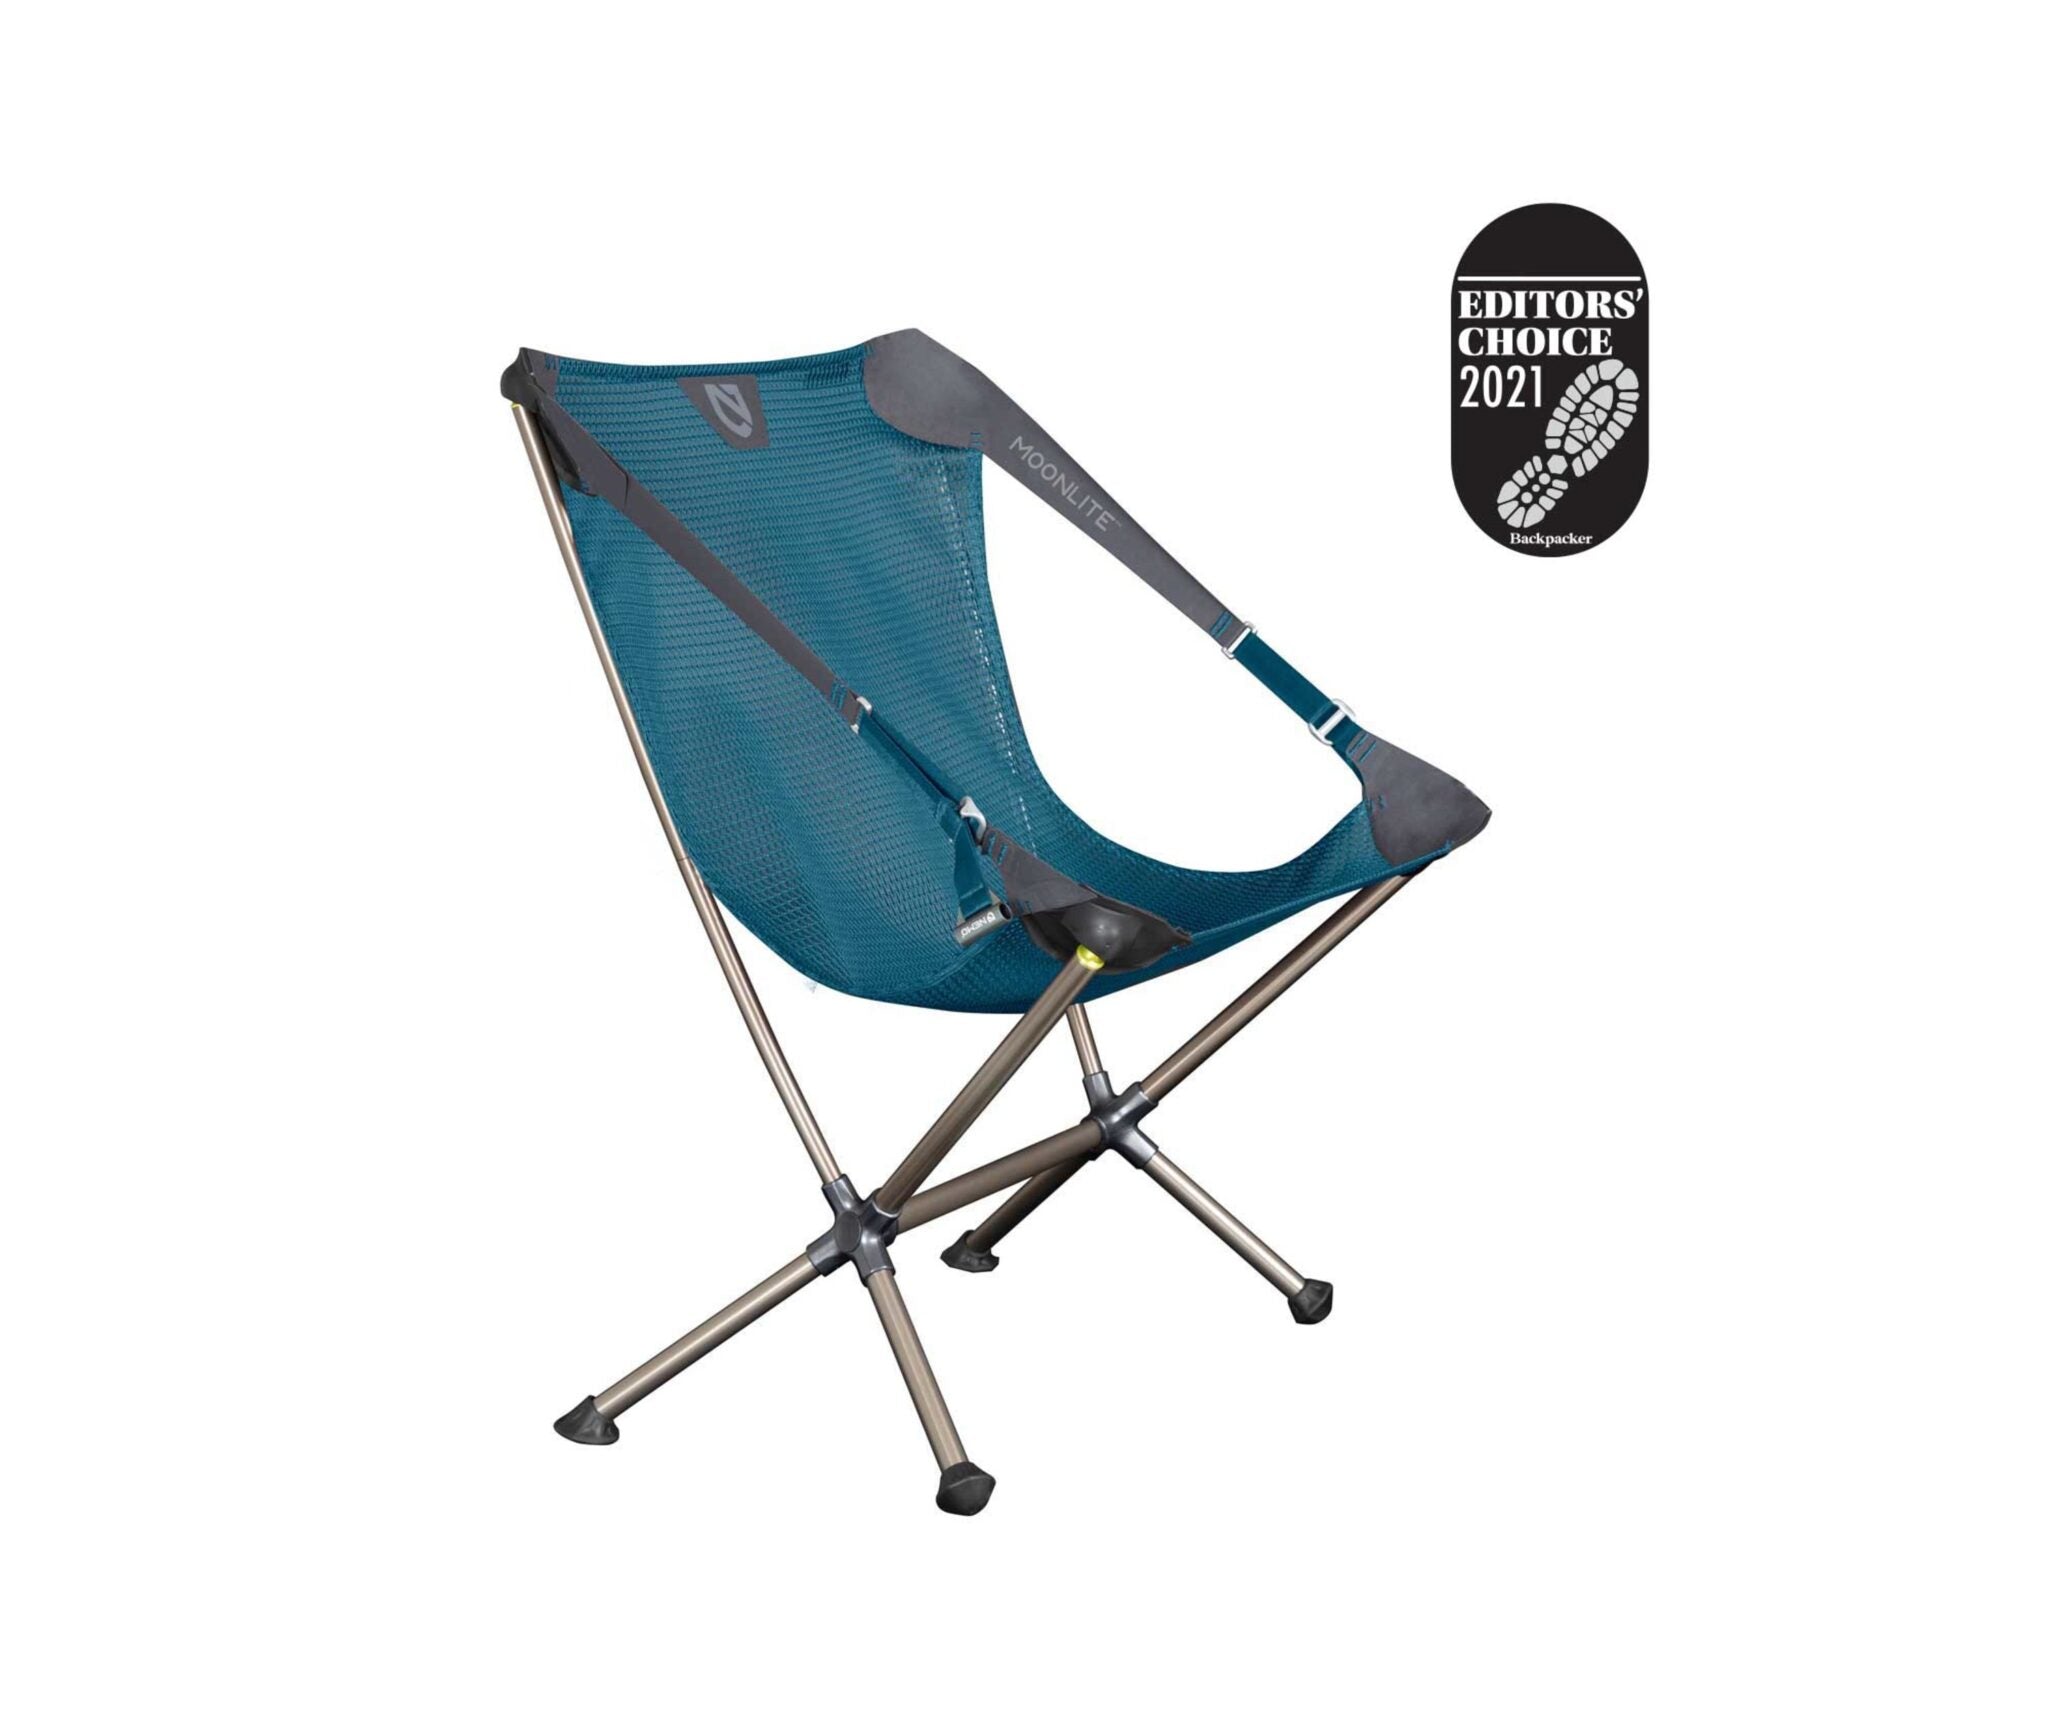 Moonlite™ reclining chair